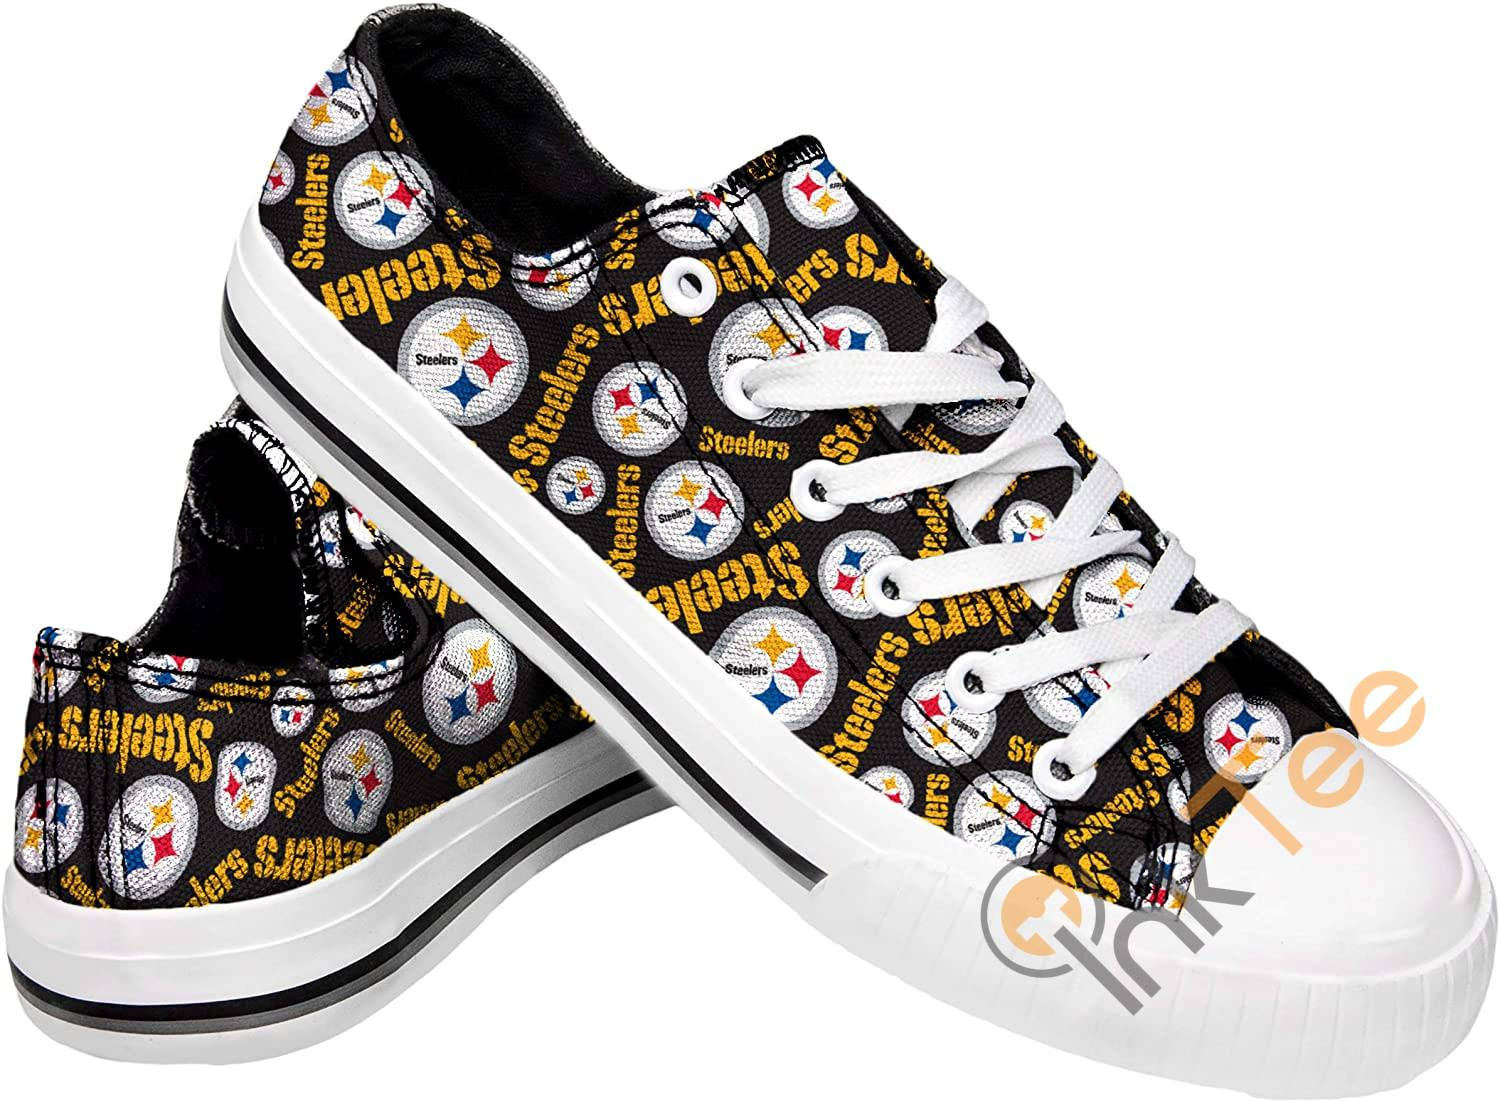 Nfl Pittsburgh Steelers Low Top Sneakers